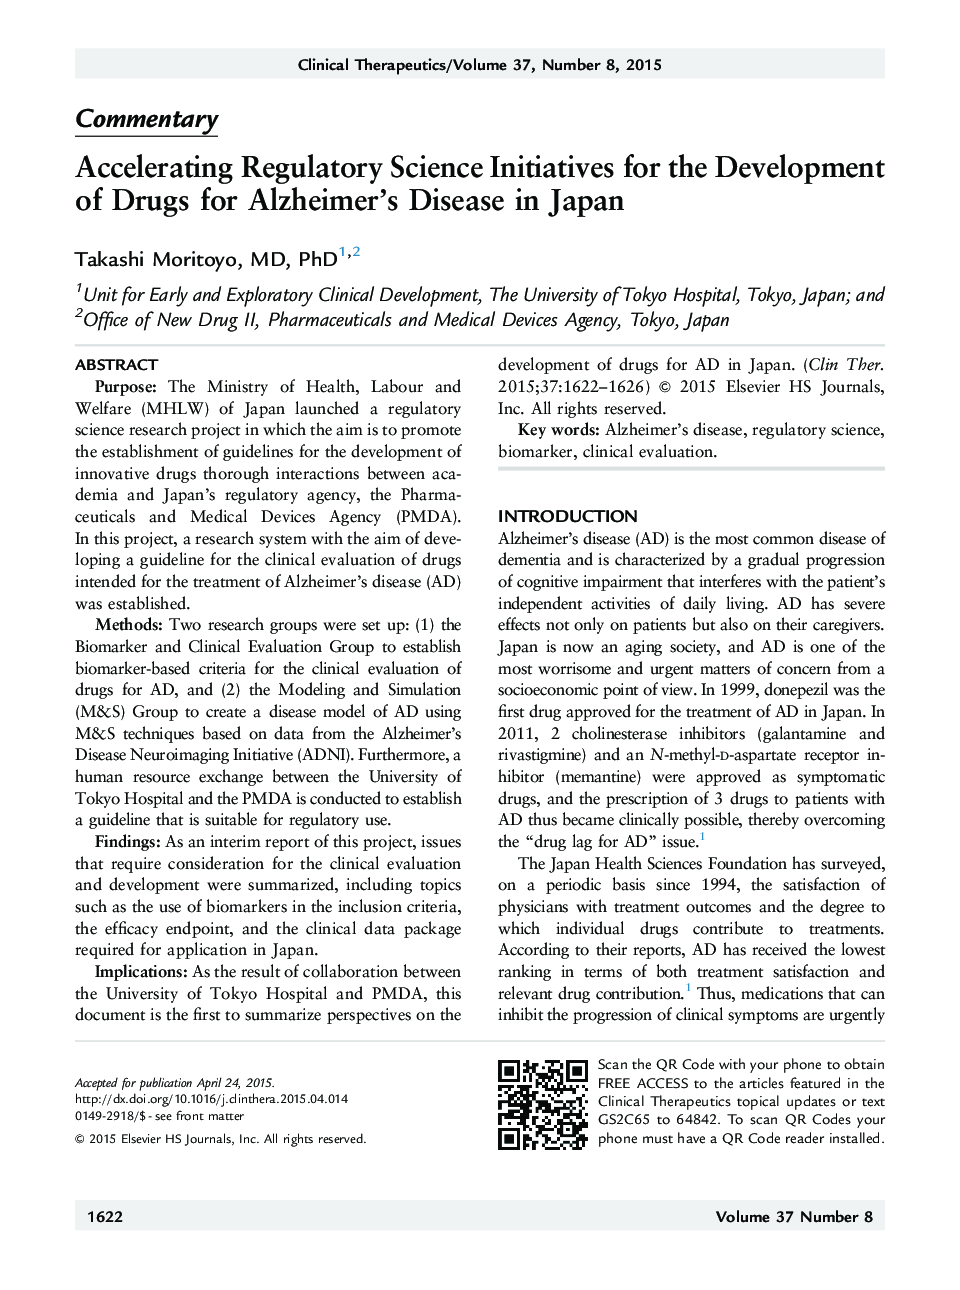 سرعت بخشیدن به مقررات علمی برای توسعه داروها برای بیماری آلزایمر در ژاپن 